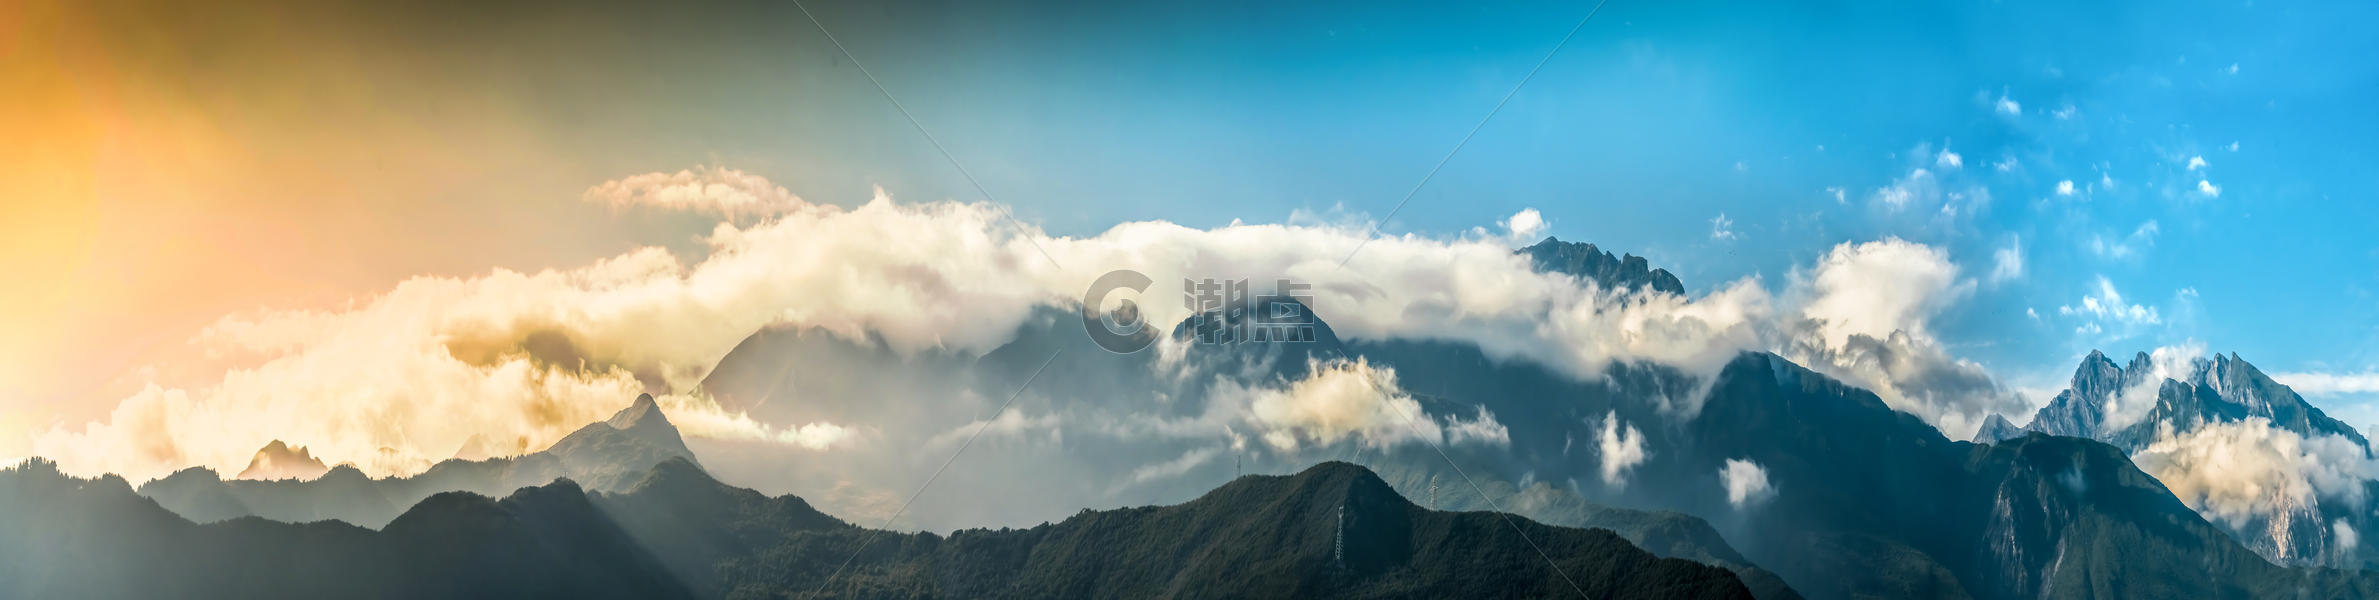 云雾缭绕 全景图图片素材免费下载